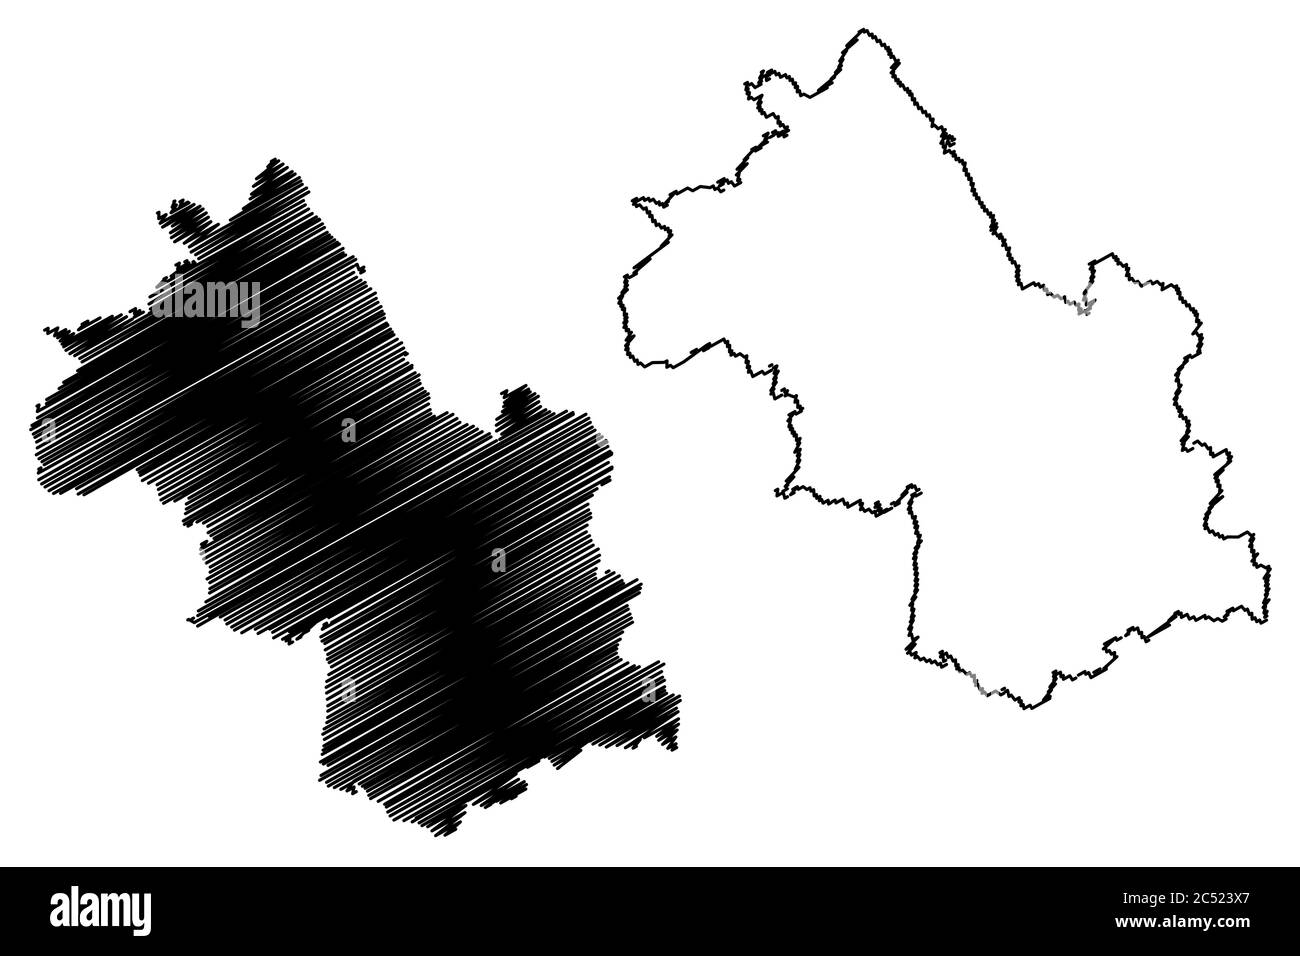 Département de l'Isère (France, République française, région Auvergne-Rhône-Alpes, ARA) carte illustration vectorielle, schéma de griffonnage carte Isera Illustration de Vecteur